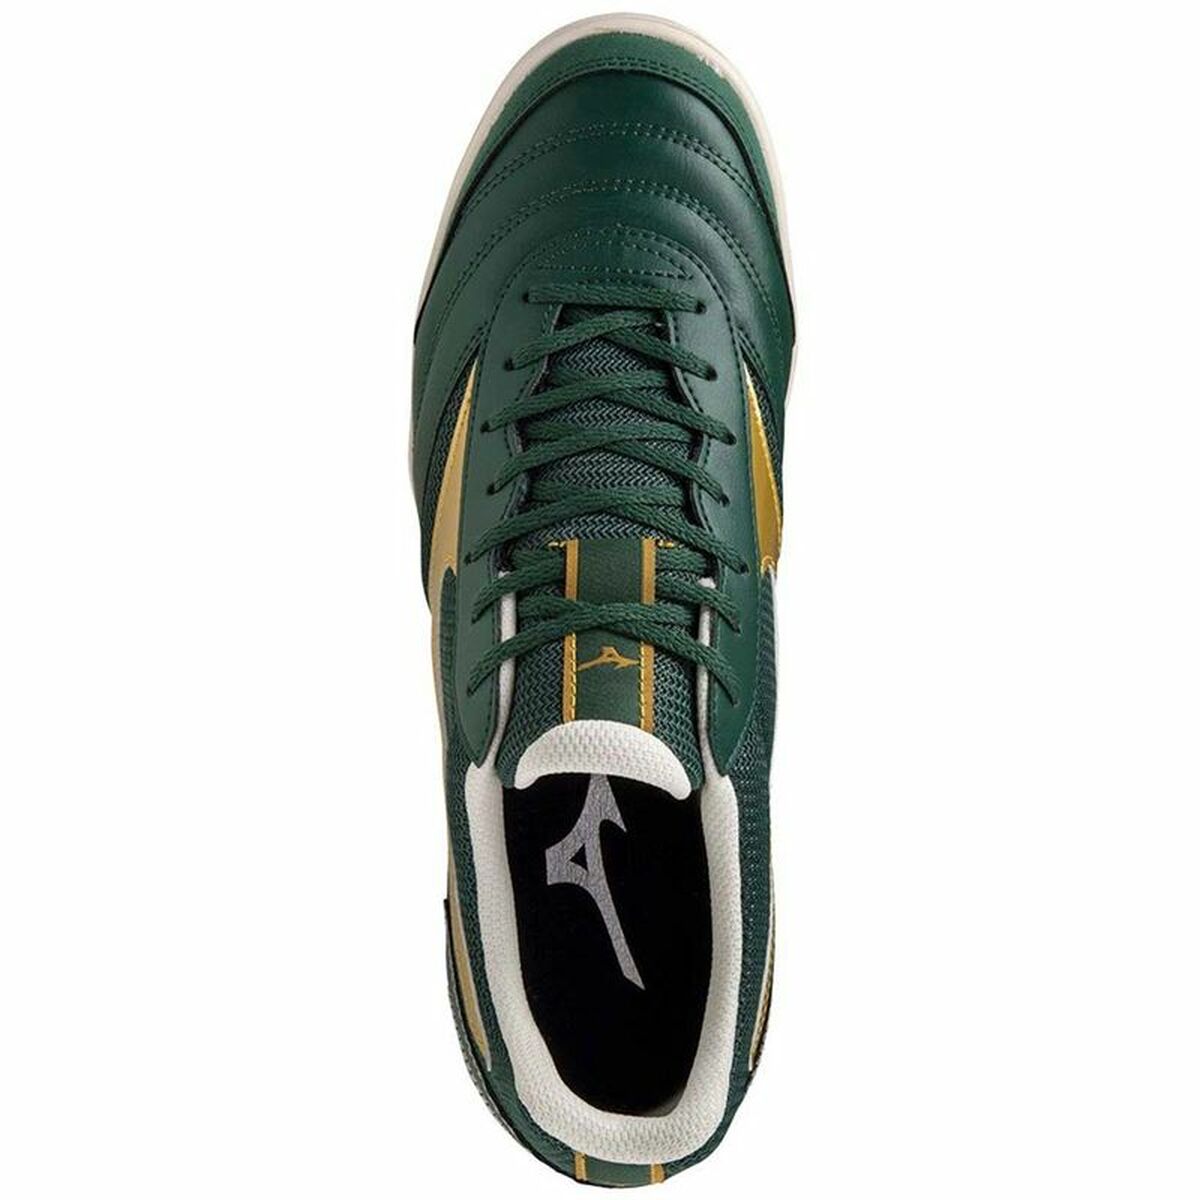 Adult's Indoor Football Shoes Mizuno Mrl Sala Club IN Green Golden